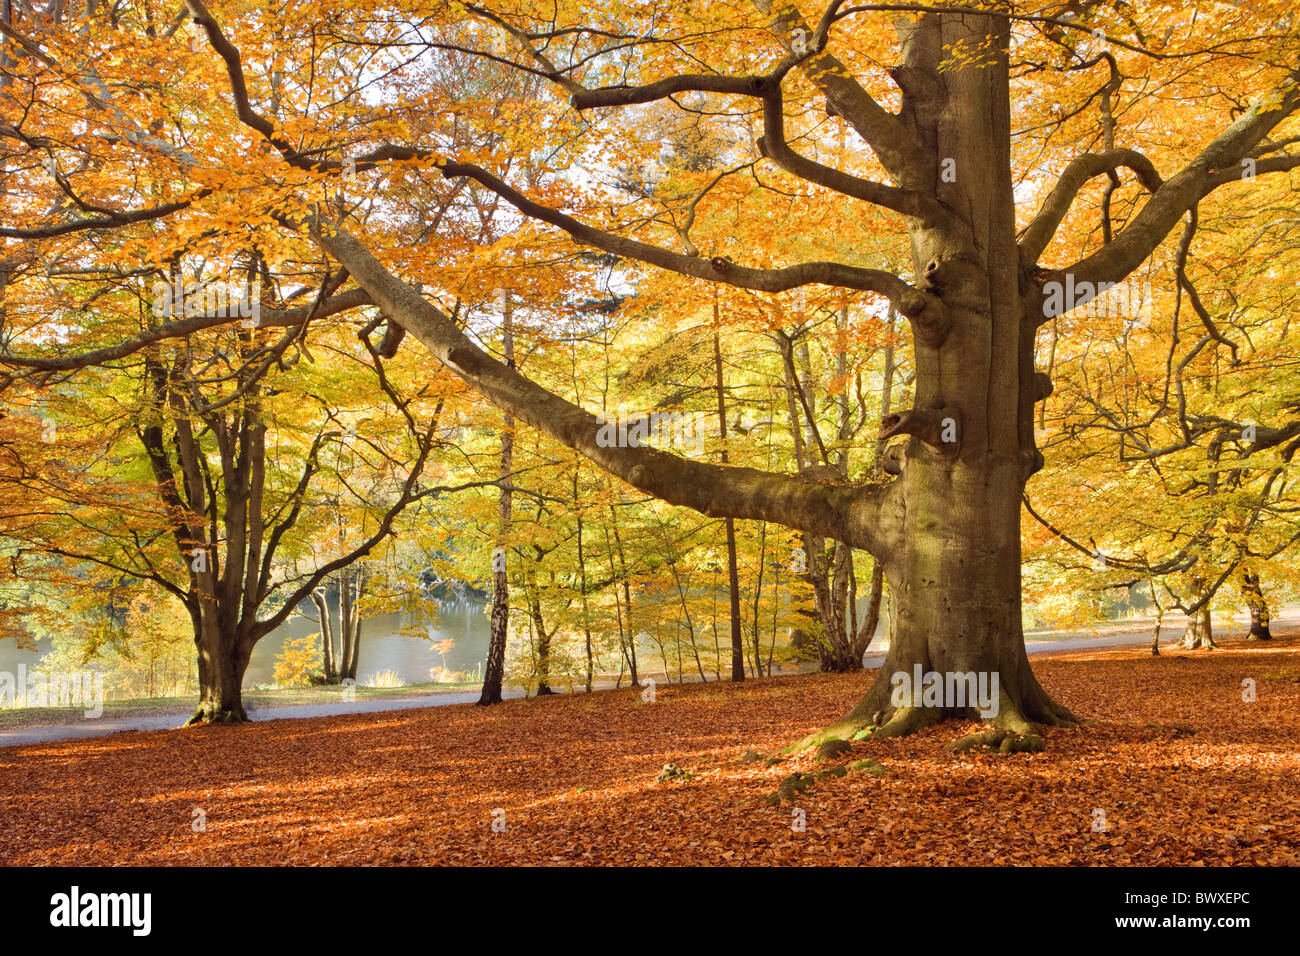 Bois de hêtre en automne, Virginia Water, Surrey, UK Banque D'Images